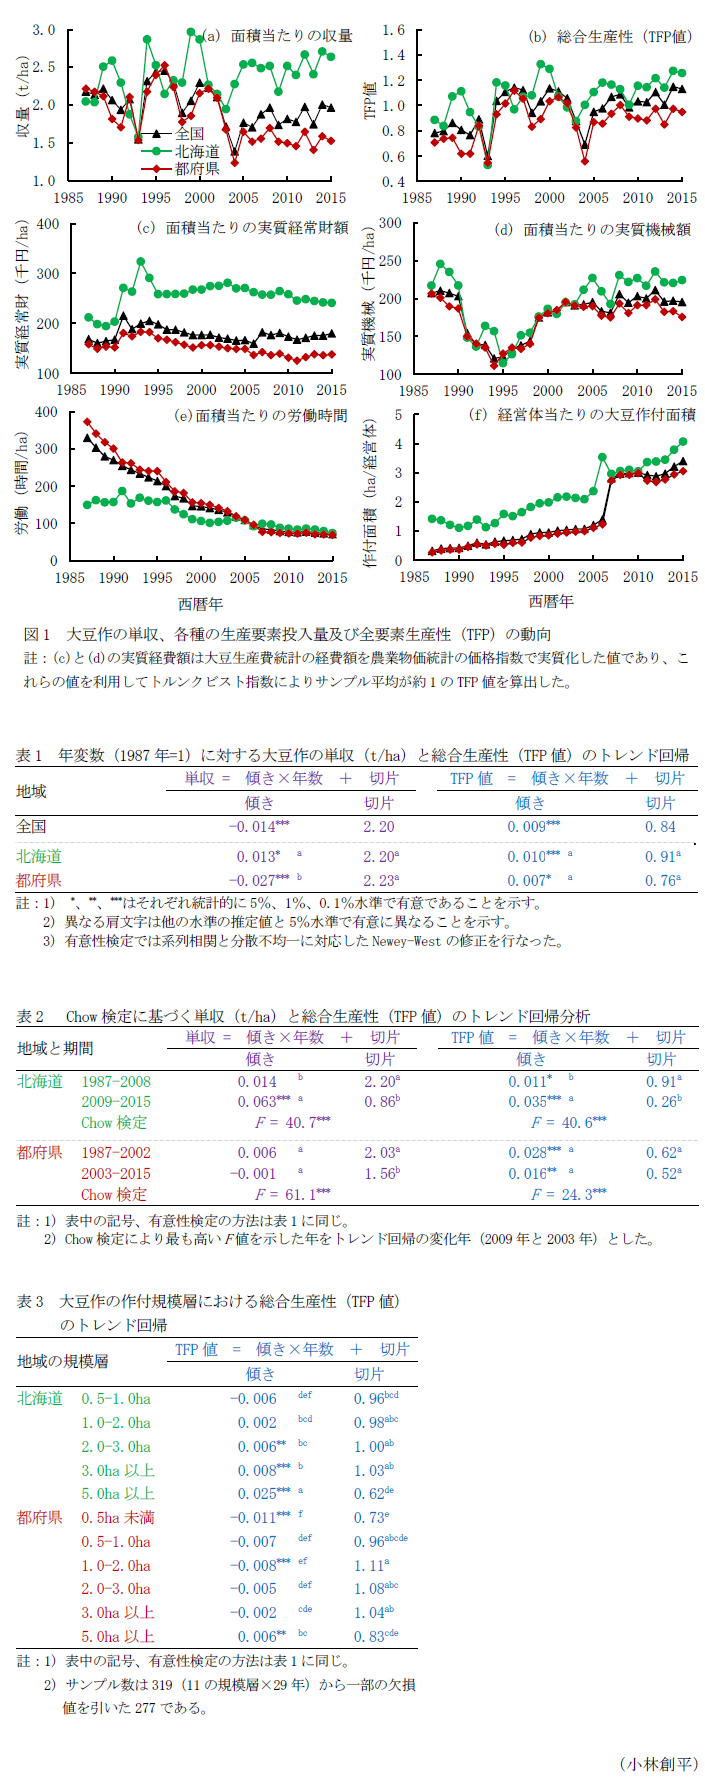 図1 大豆作の単収、各種の生産要素投入量及び全要素生産性(TFP)の動向,表1 年変数(1987年=1)に対する大豆作の単収(t/ha)と総合生産性(TFP値)のトレンド回帰,表2  Chow検定に基づく単収(t/ha)と総合生産性(TFP値)のトレンド回帰分析,表3 大豆作の作付規模層における総合生産性(TFP値)のトレンド回帰